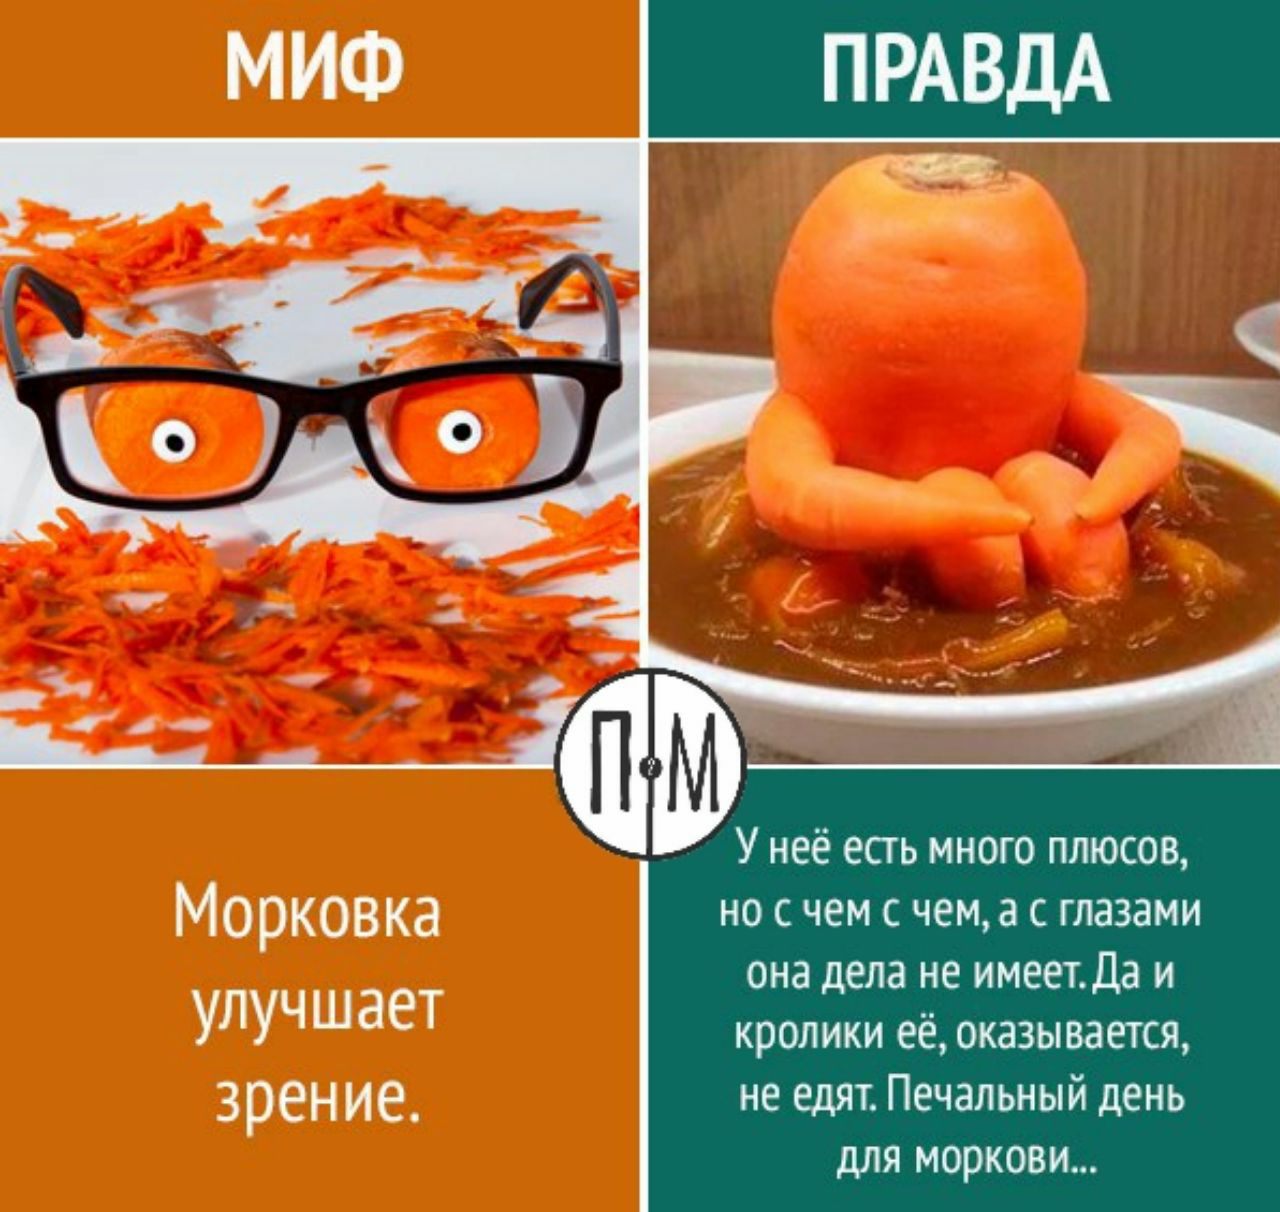 Что нужно есть для глаз. Морковь полезна для зрения. Морковь улучшает зрение. Миф правда. Правда или миф.